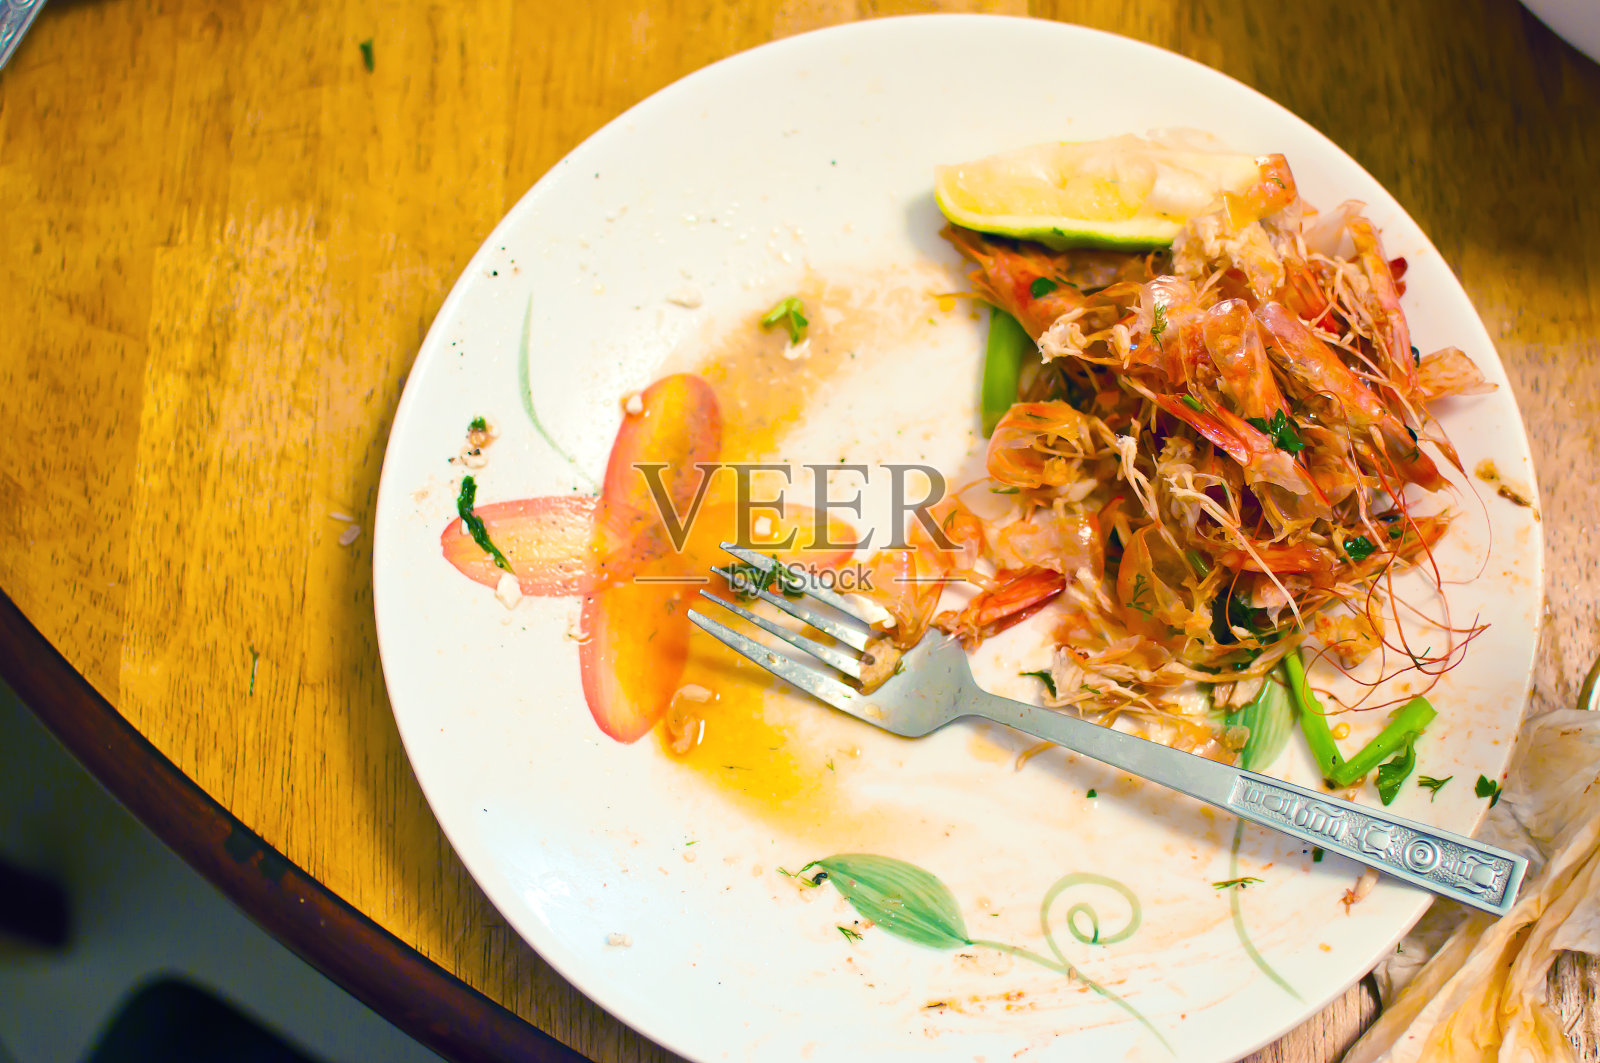 晚餐剩菜。木桌上的白盘子里堆满了红虾的甲壳，上面沾满了酱汁和食物残渣。观念垃圾、废物、有机回收、低效利用食物。俯视图照片摄影图片